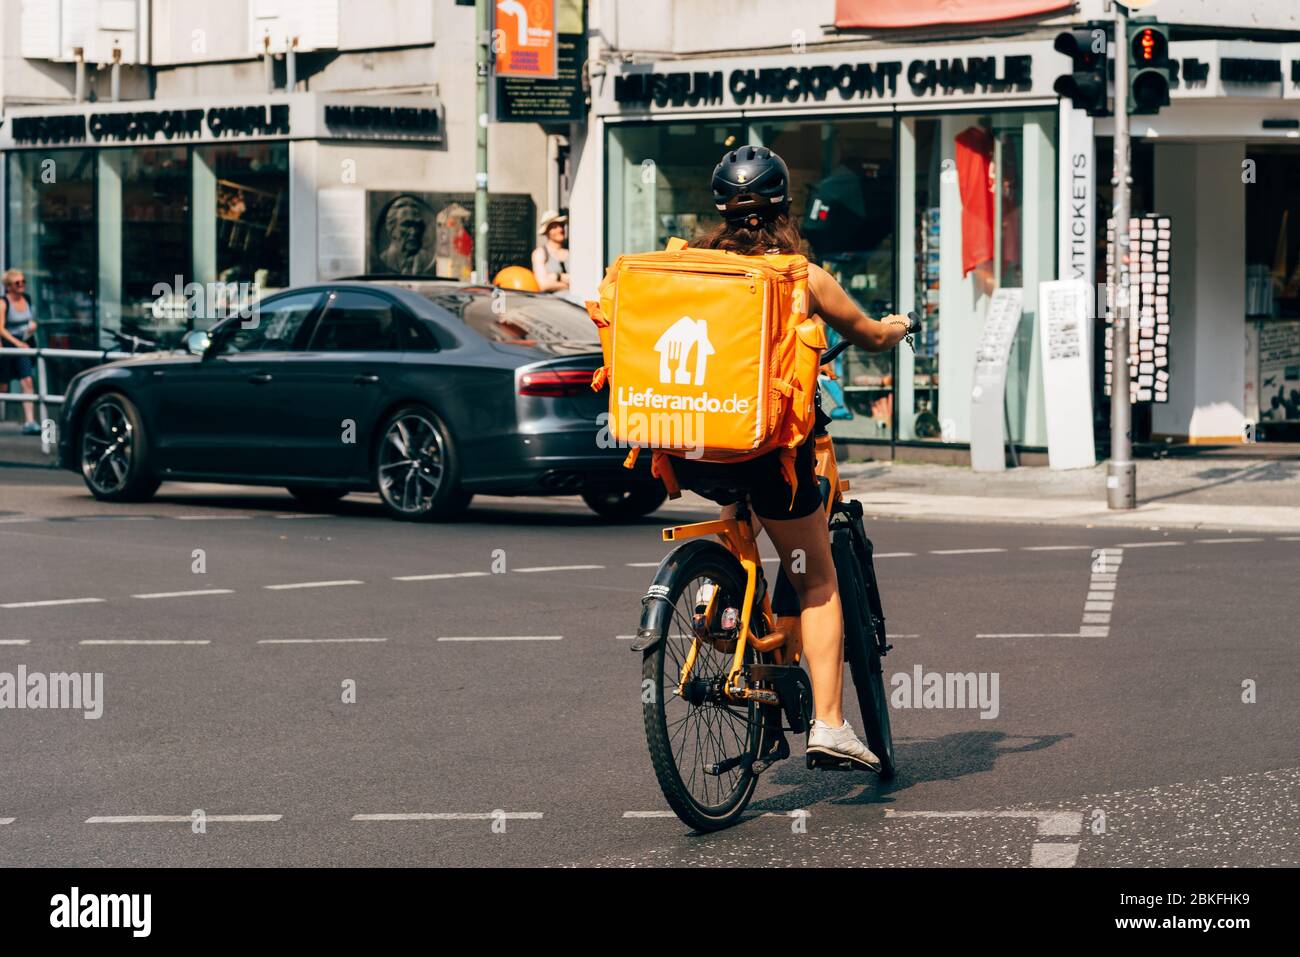 Berlin, Deutschland - 29. Juli 2019: Junge Frau auf dem Fahrrad auf der Friedrichstraße, die Lebensmittel für Lieferando, einen deutschen Lebensmittellieferdienst, liefert Stockfoto